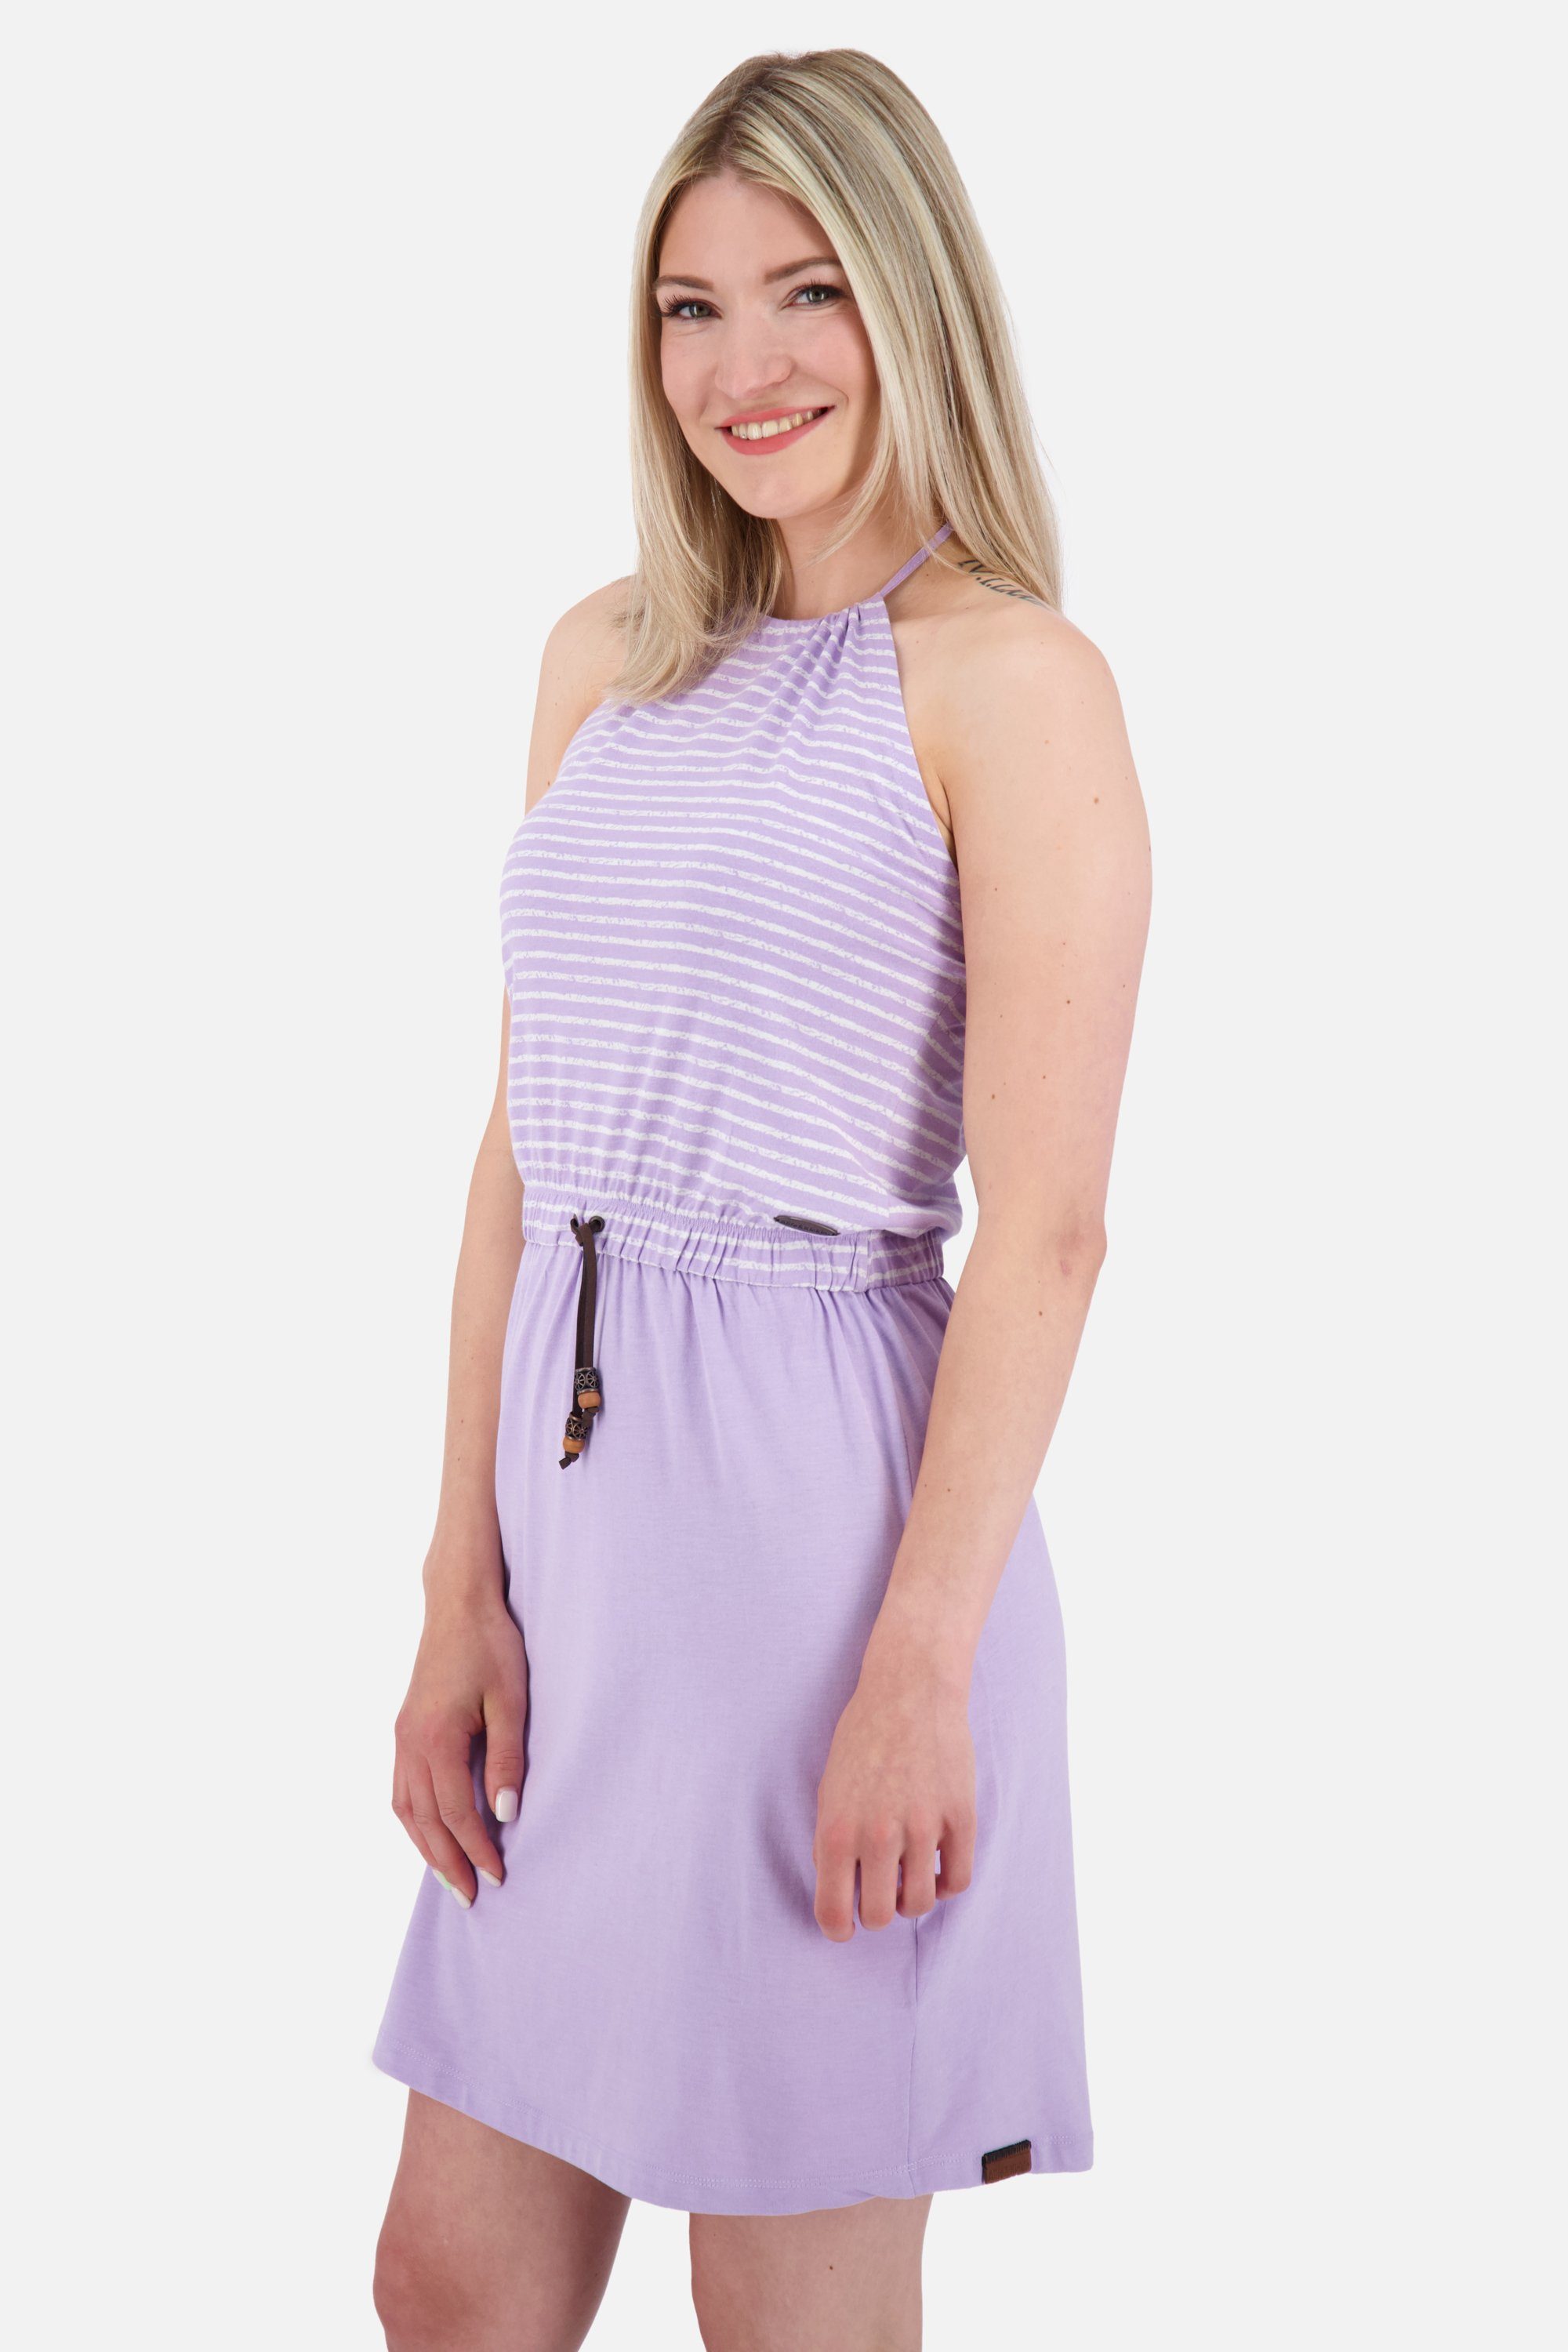 Alife & Kickin Sommerkleid, Sleeveless Dress VerenaAK digital Z Sommerkleid Kleid Damen lavender